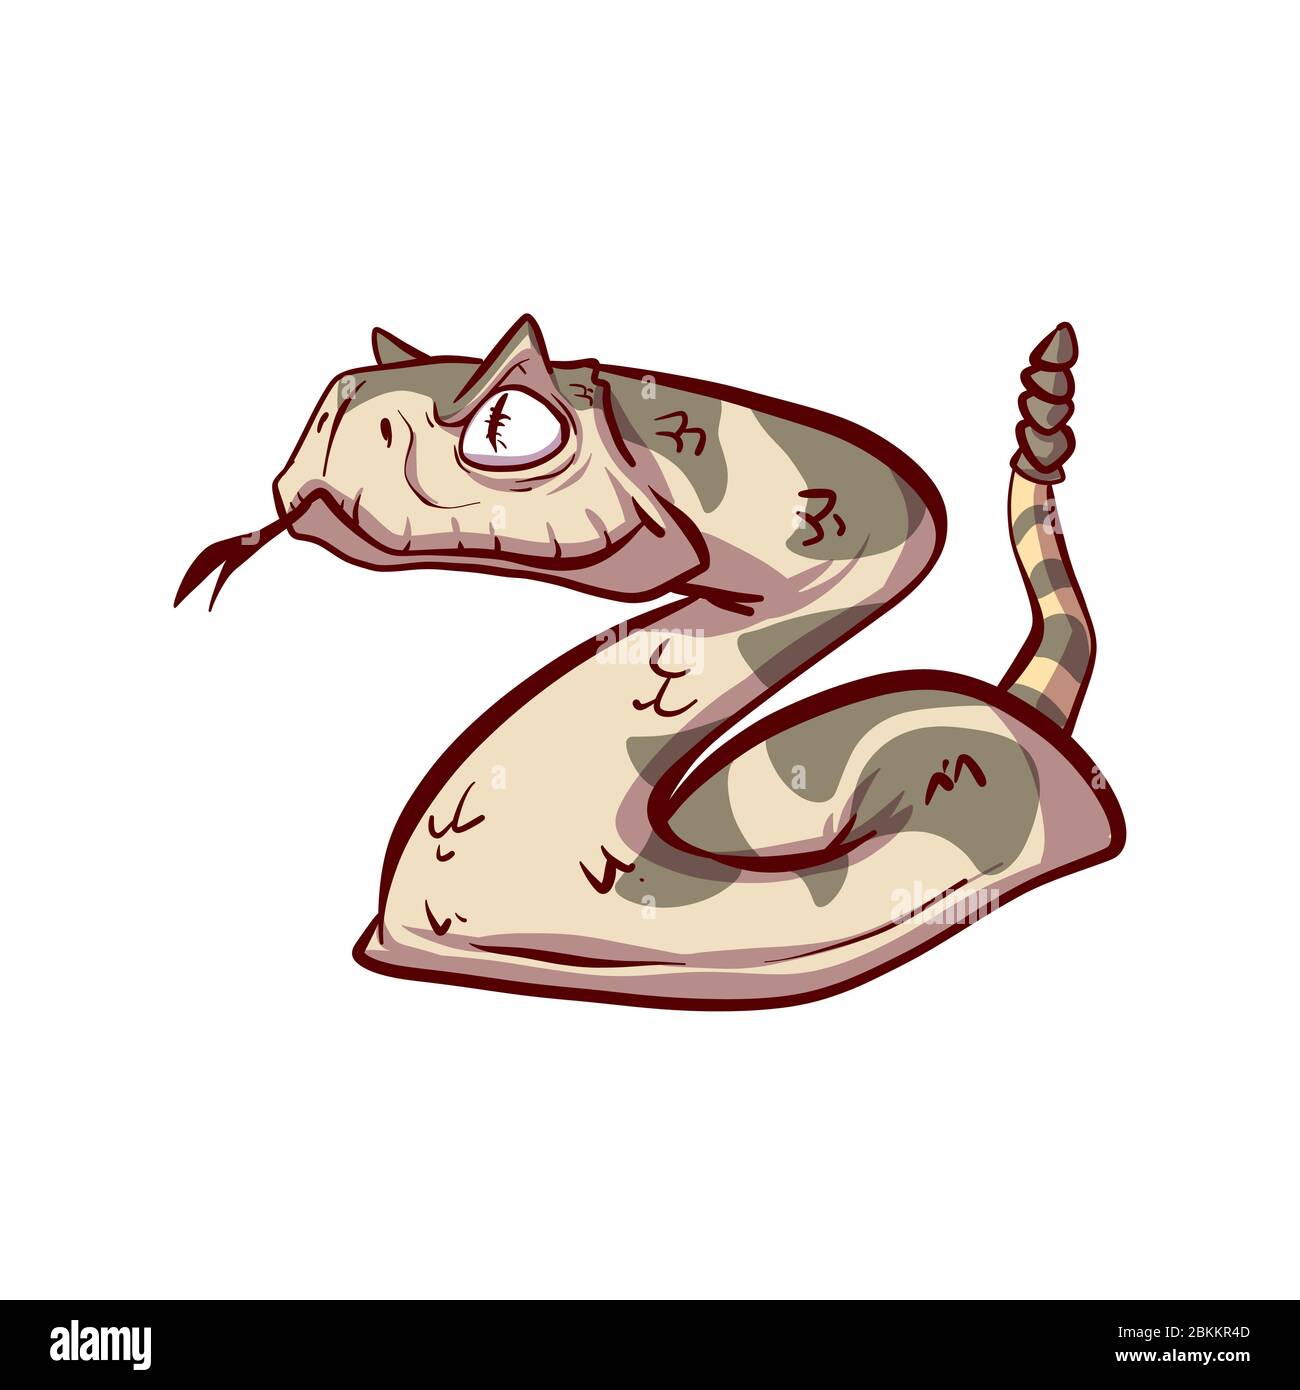 Illustrationvecteur coloré d'un serpent hochet venimeux de dessin animé Illustration de Vecteur